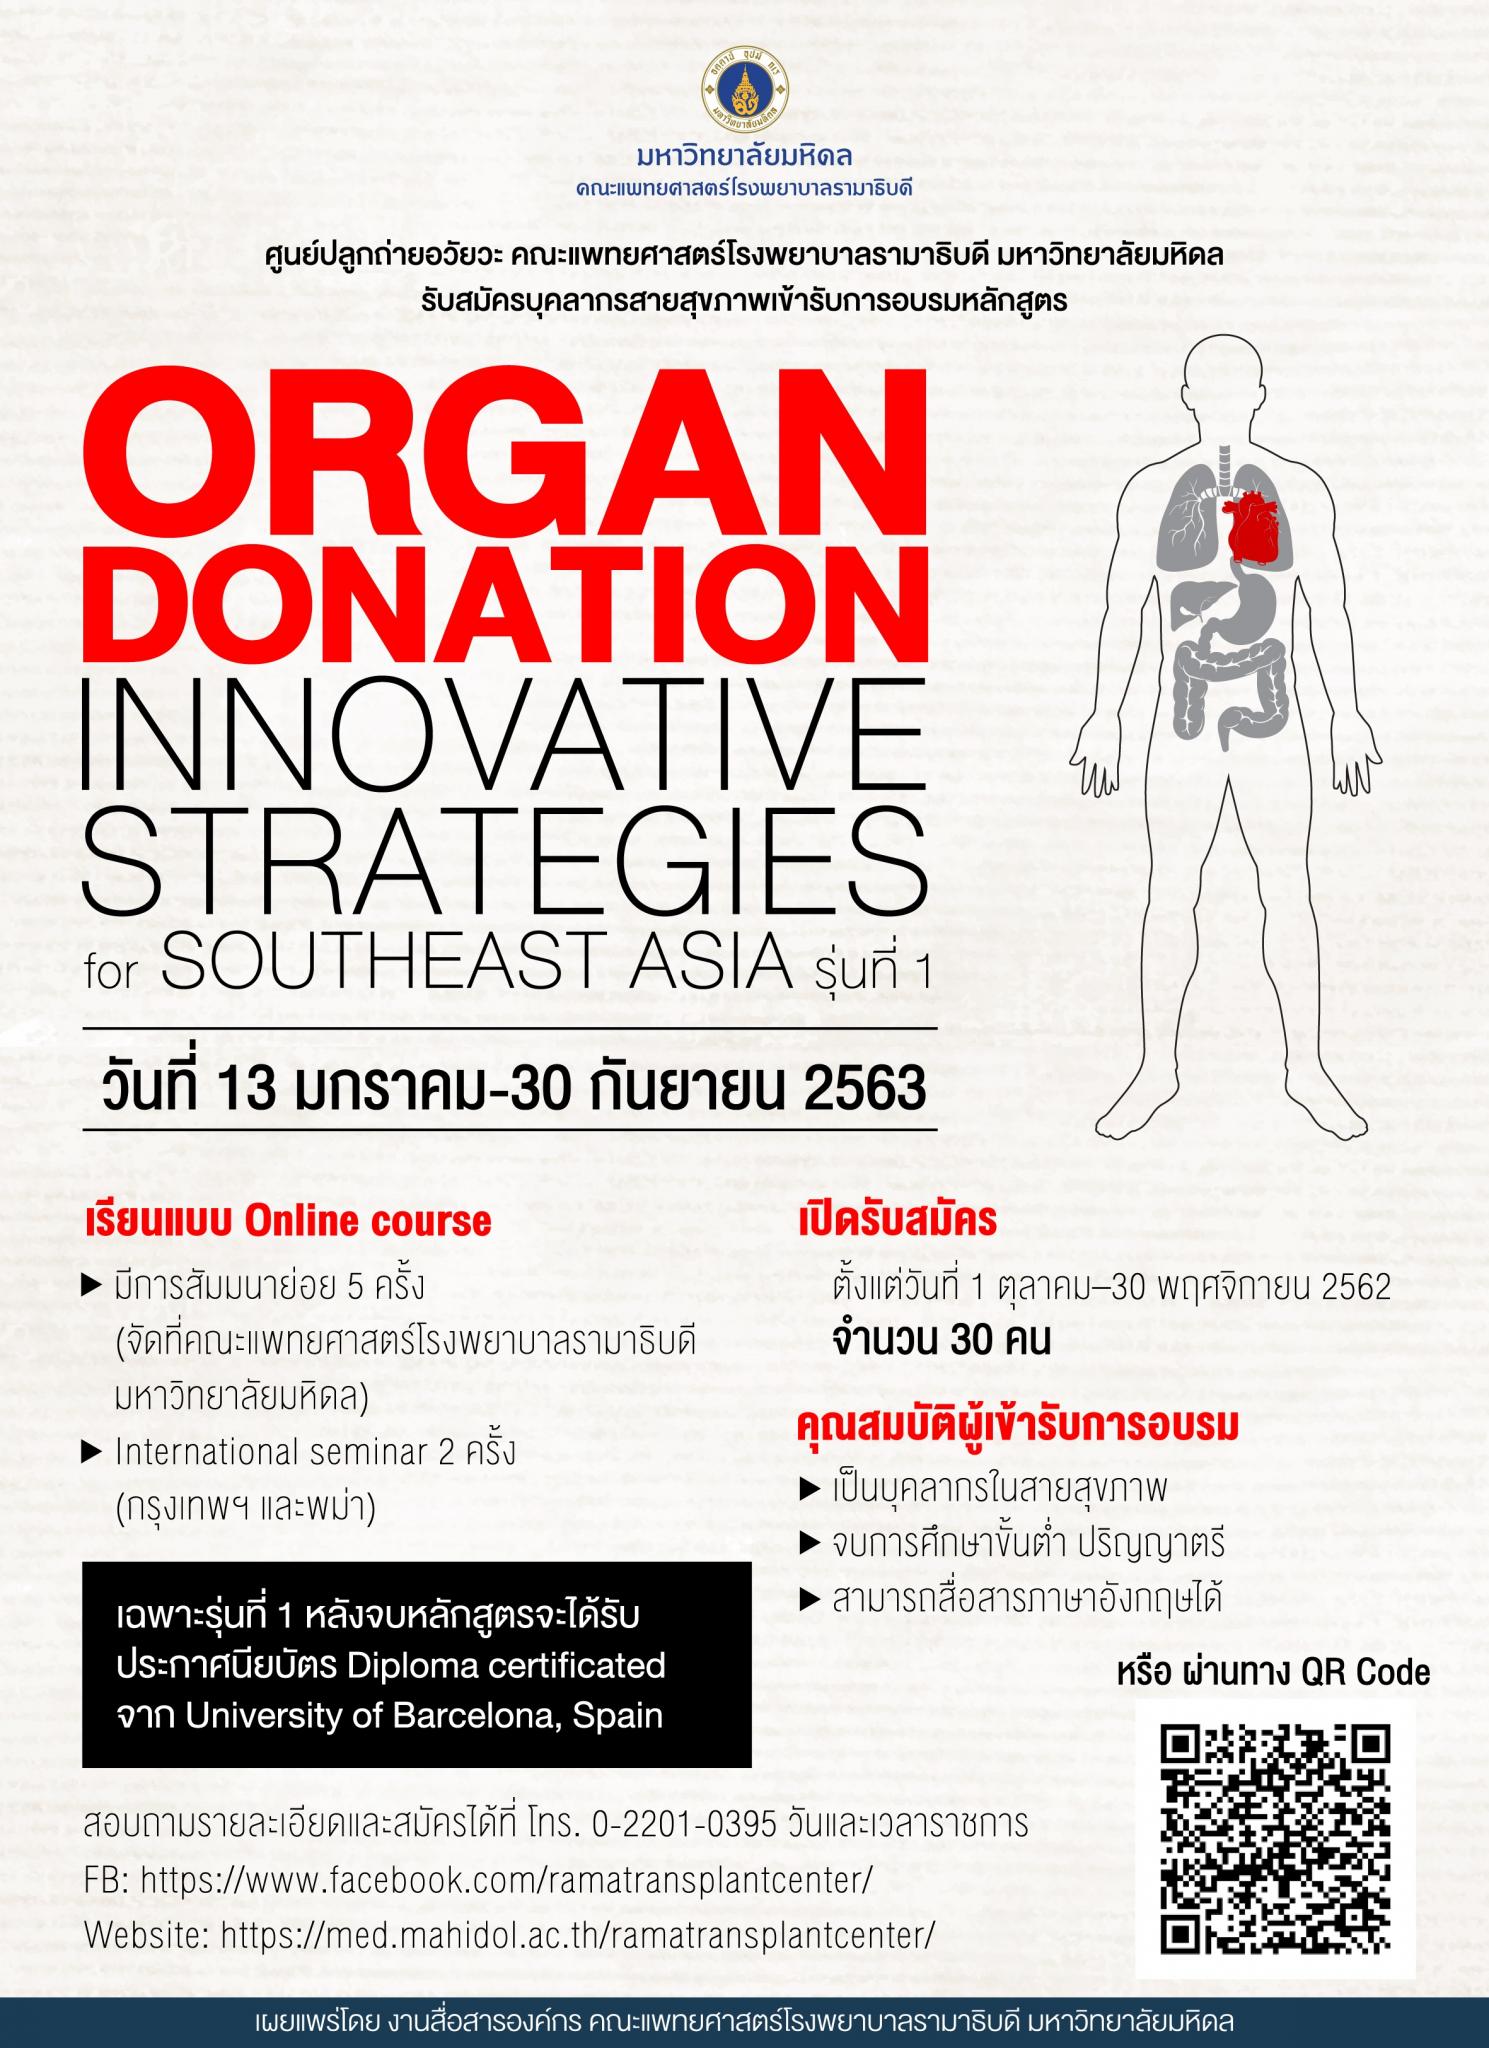 รับสมัครบุคลากรสายสุขภาพเข้ารับการอบรมหลักสูตร “Organ Donation Innovative Strategies for Southeast Asia” รุ่นที่ 1